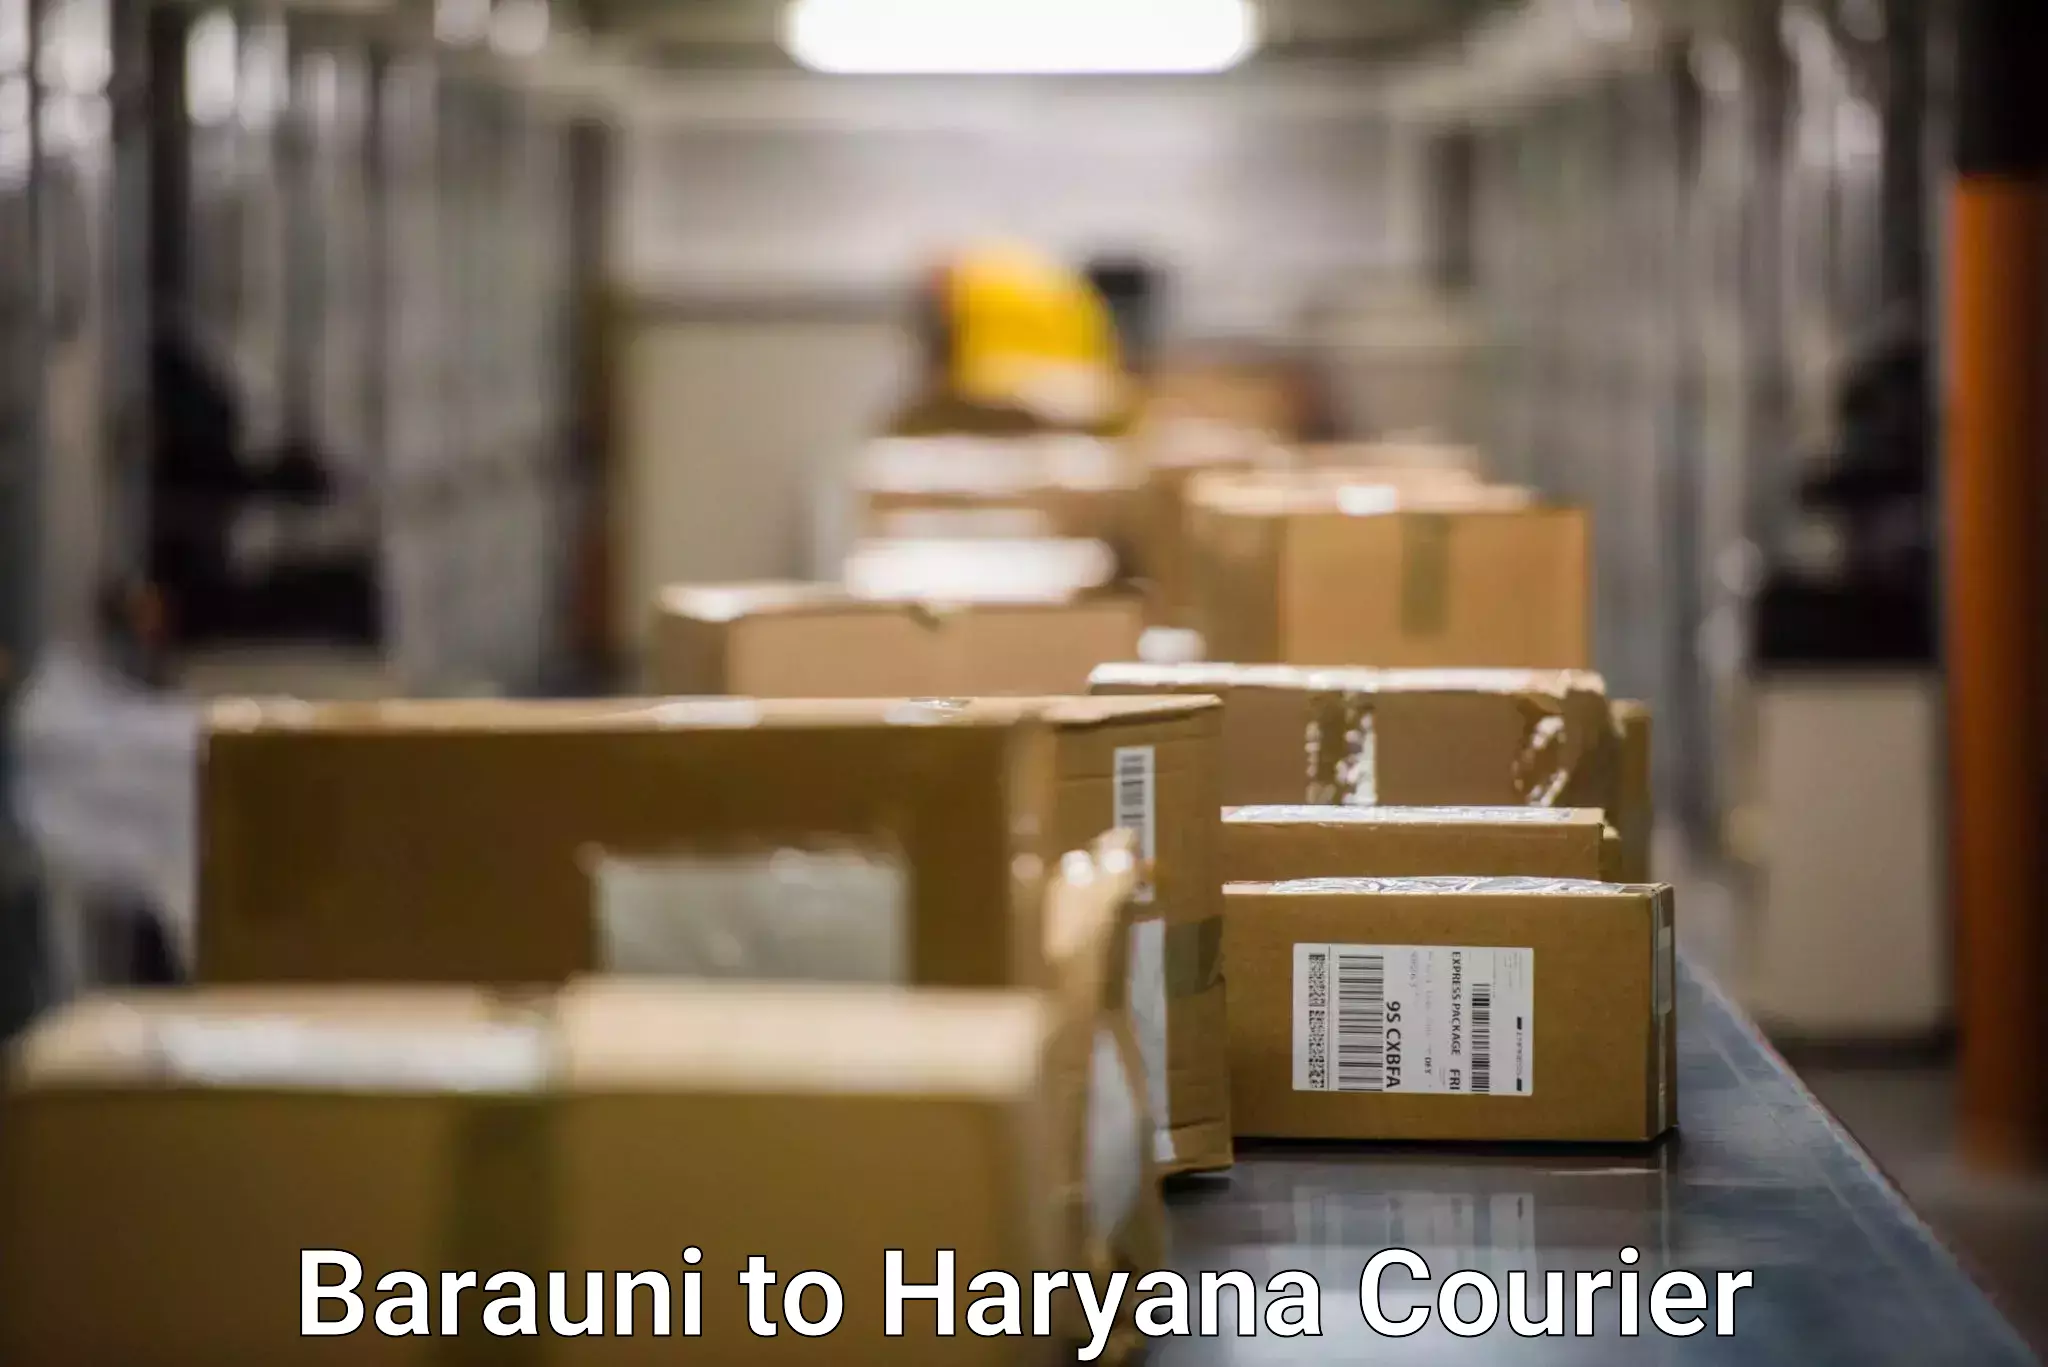 Multi-carrier shipping Barauni to Gurgaon